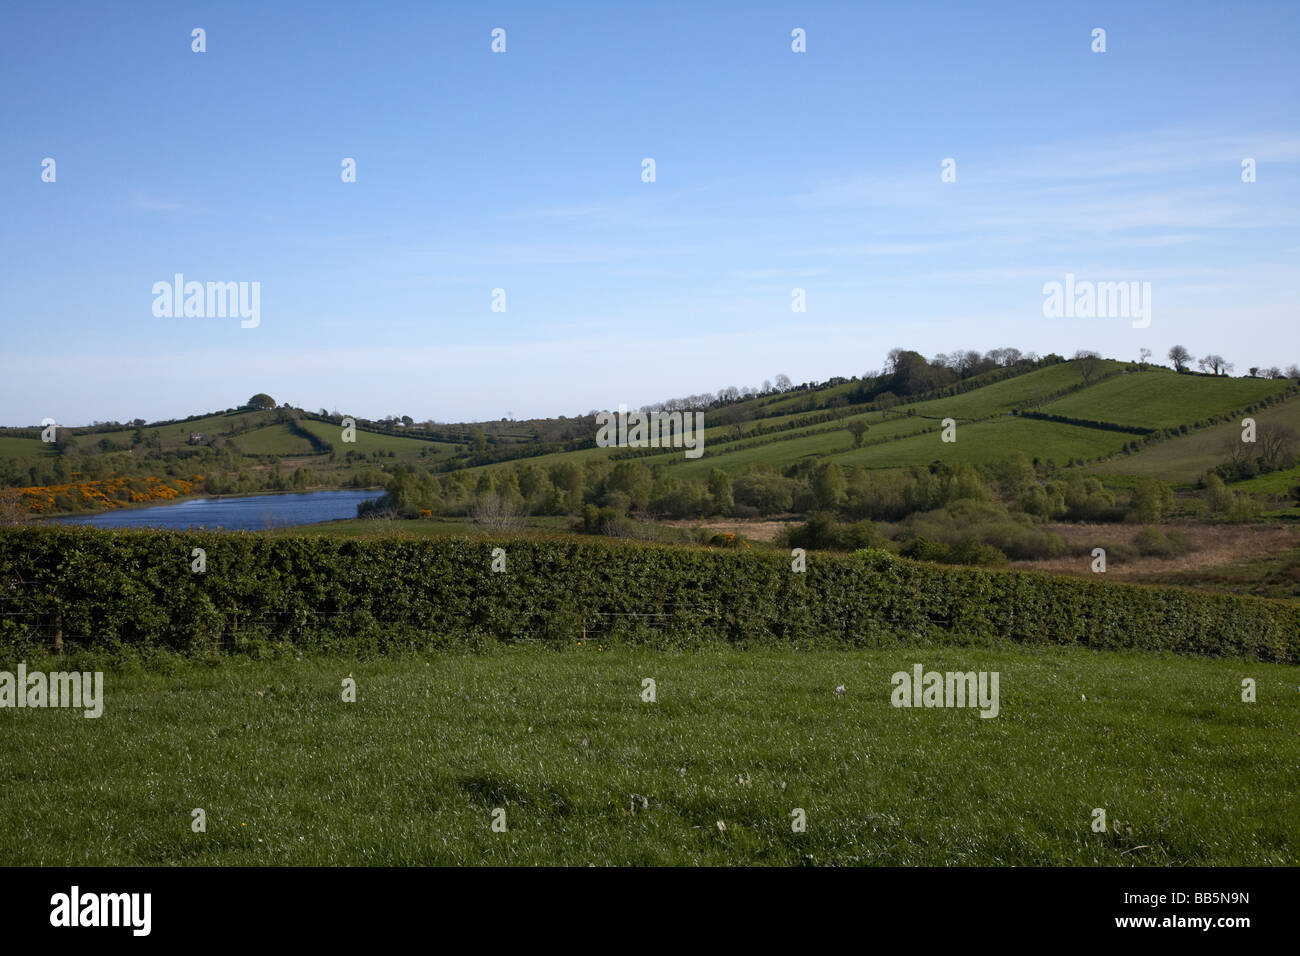 typische Drumlins Ridgeline in Landschaft South Armagh Nordirland Vereinigtes Königreich Stockfoto